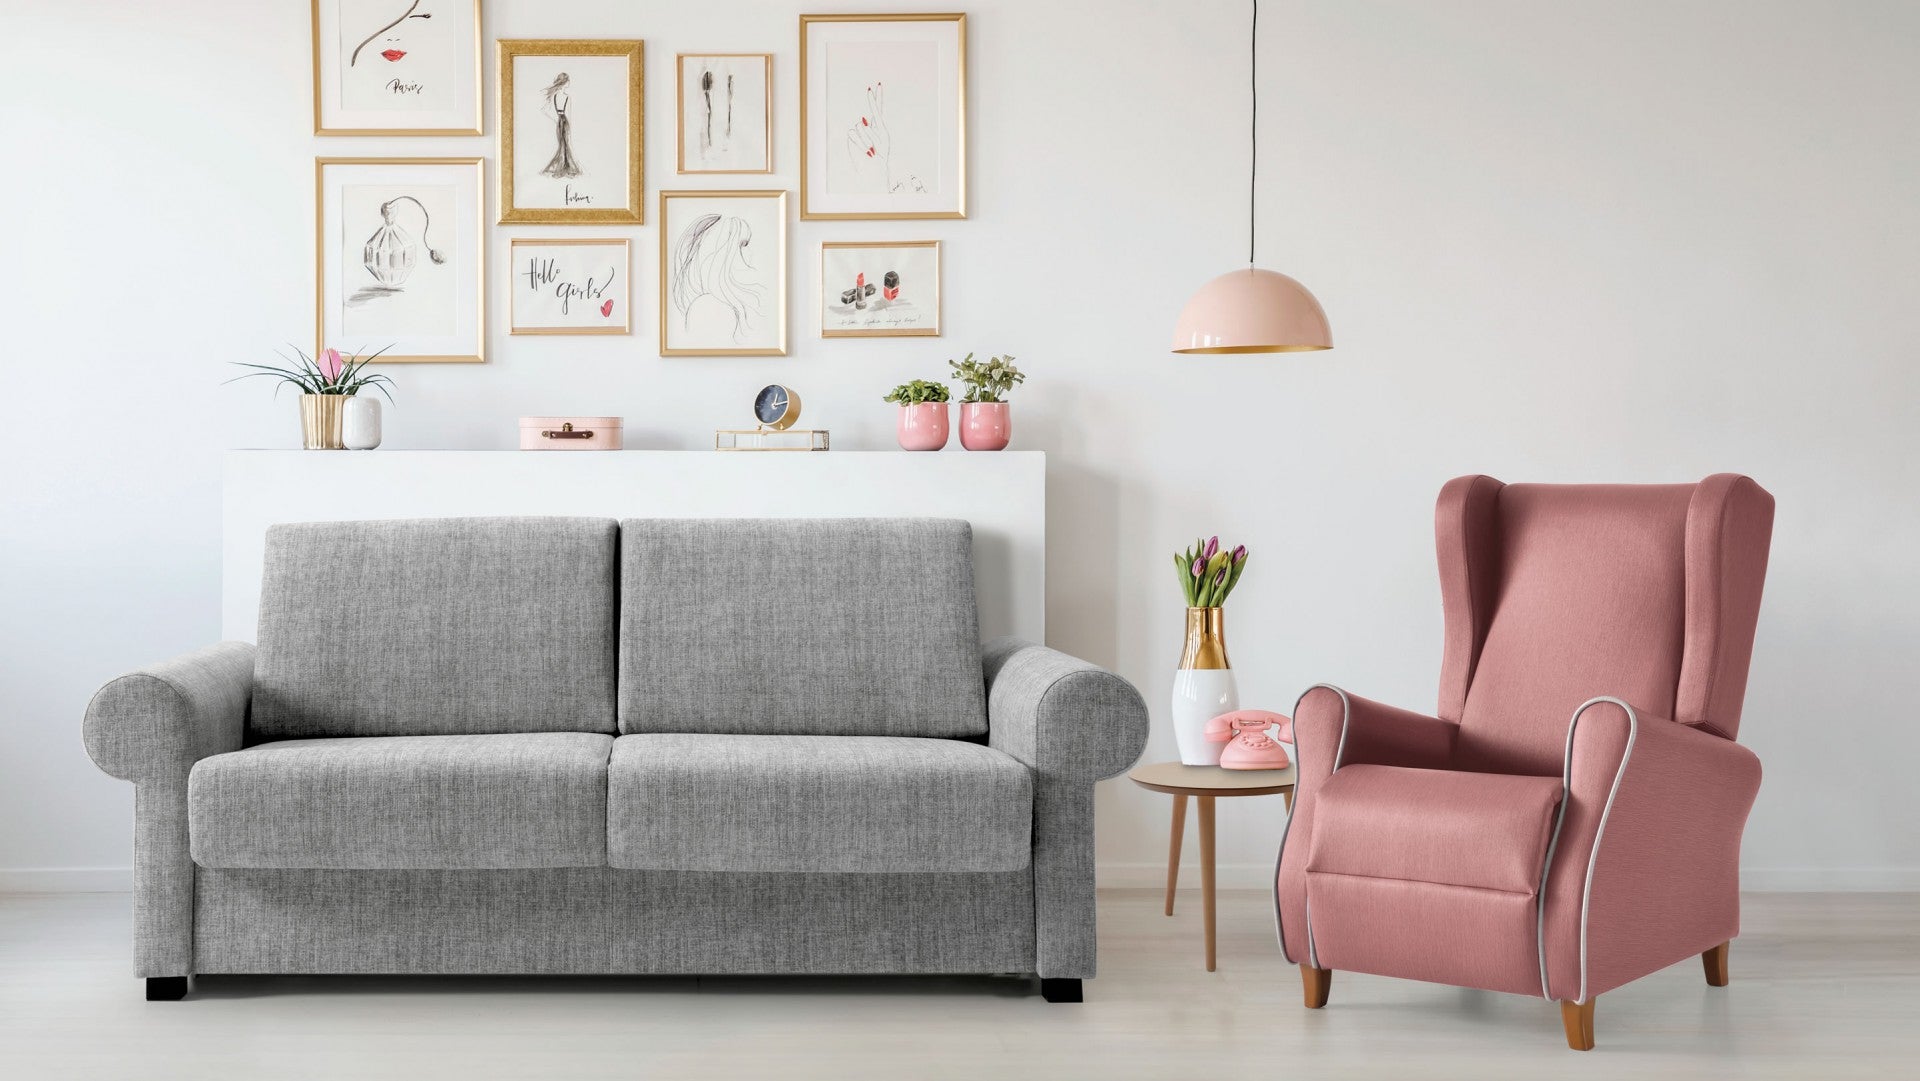 Canapé 140 x 200 cm abatible tapizado moderno - Charlotte - Don Baraton:  tienda de sofás, colchones y muebles